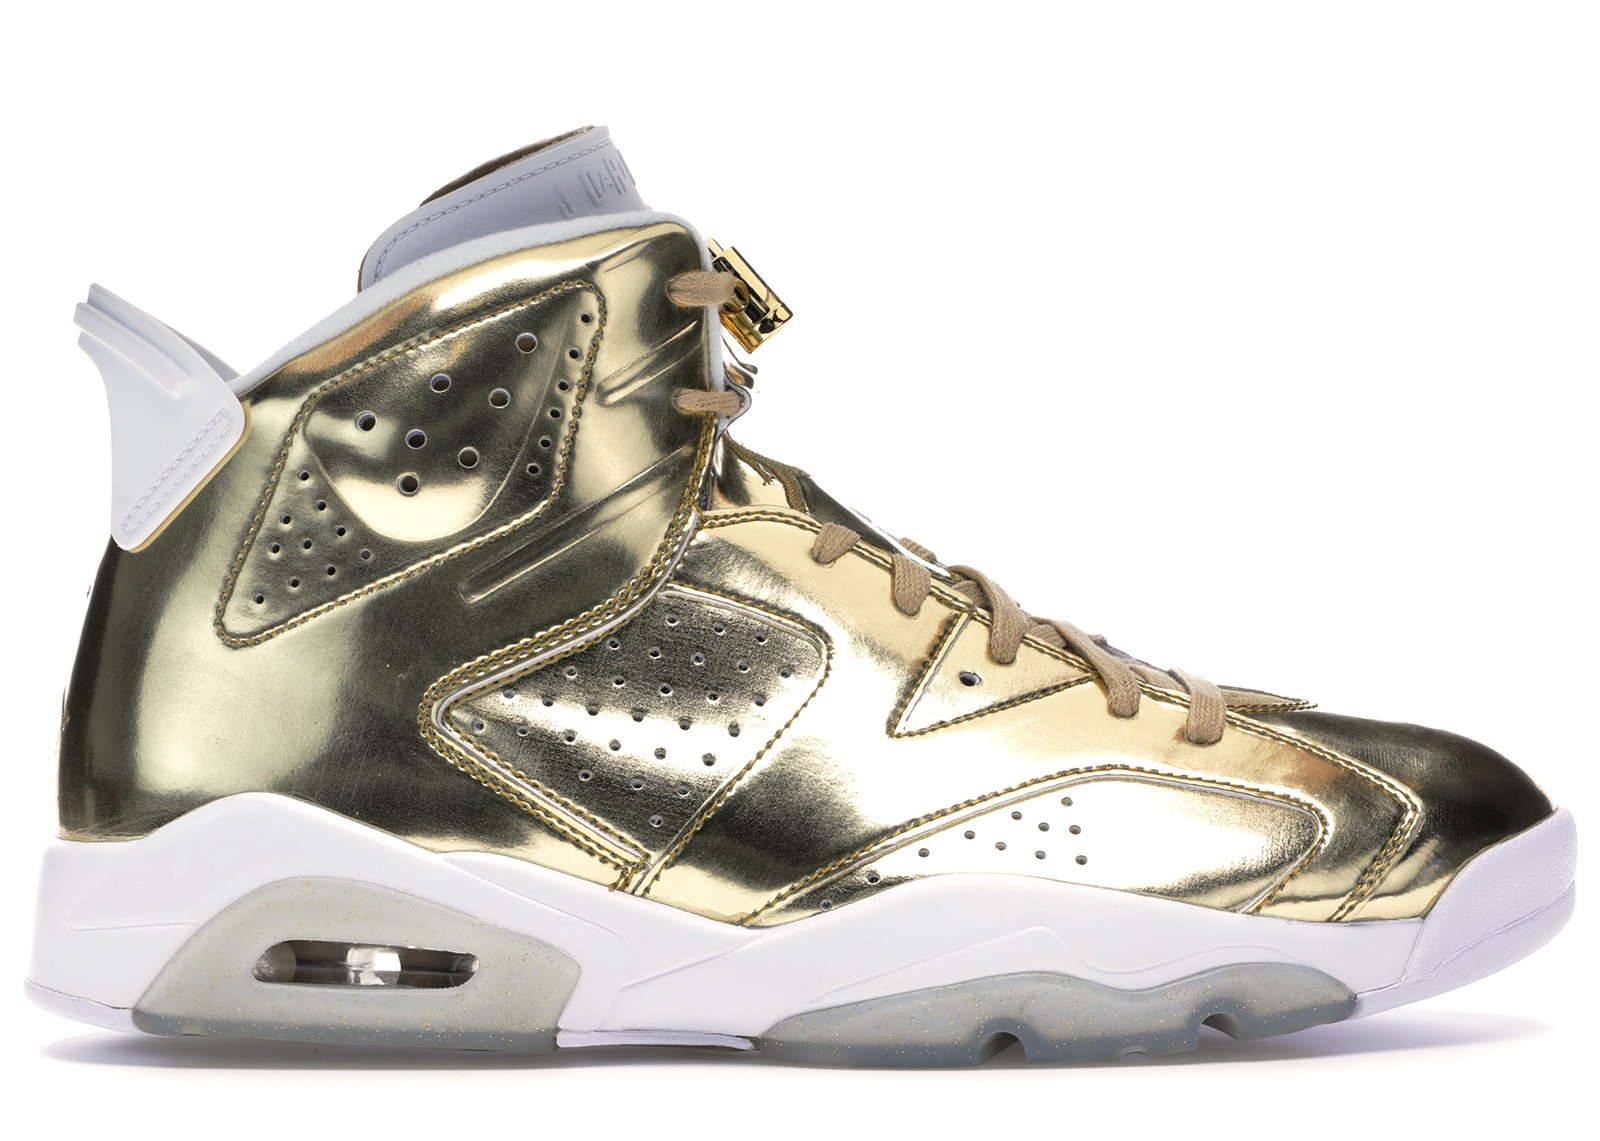 Jordan 6 Retro Pinnacle Metallic Gold sneakers